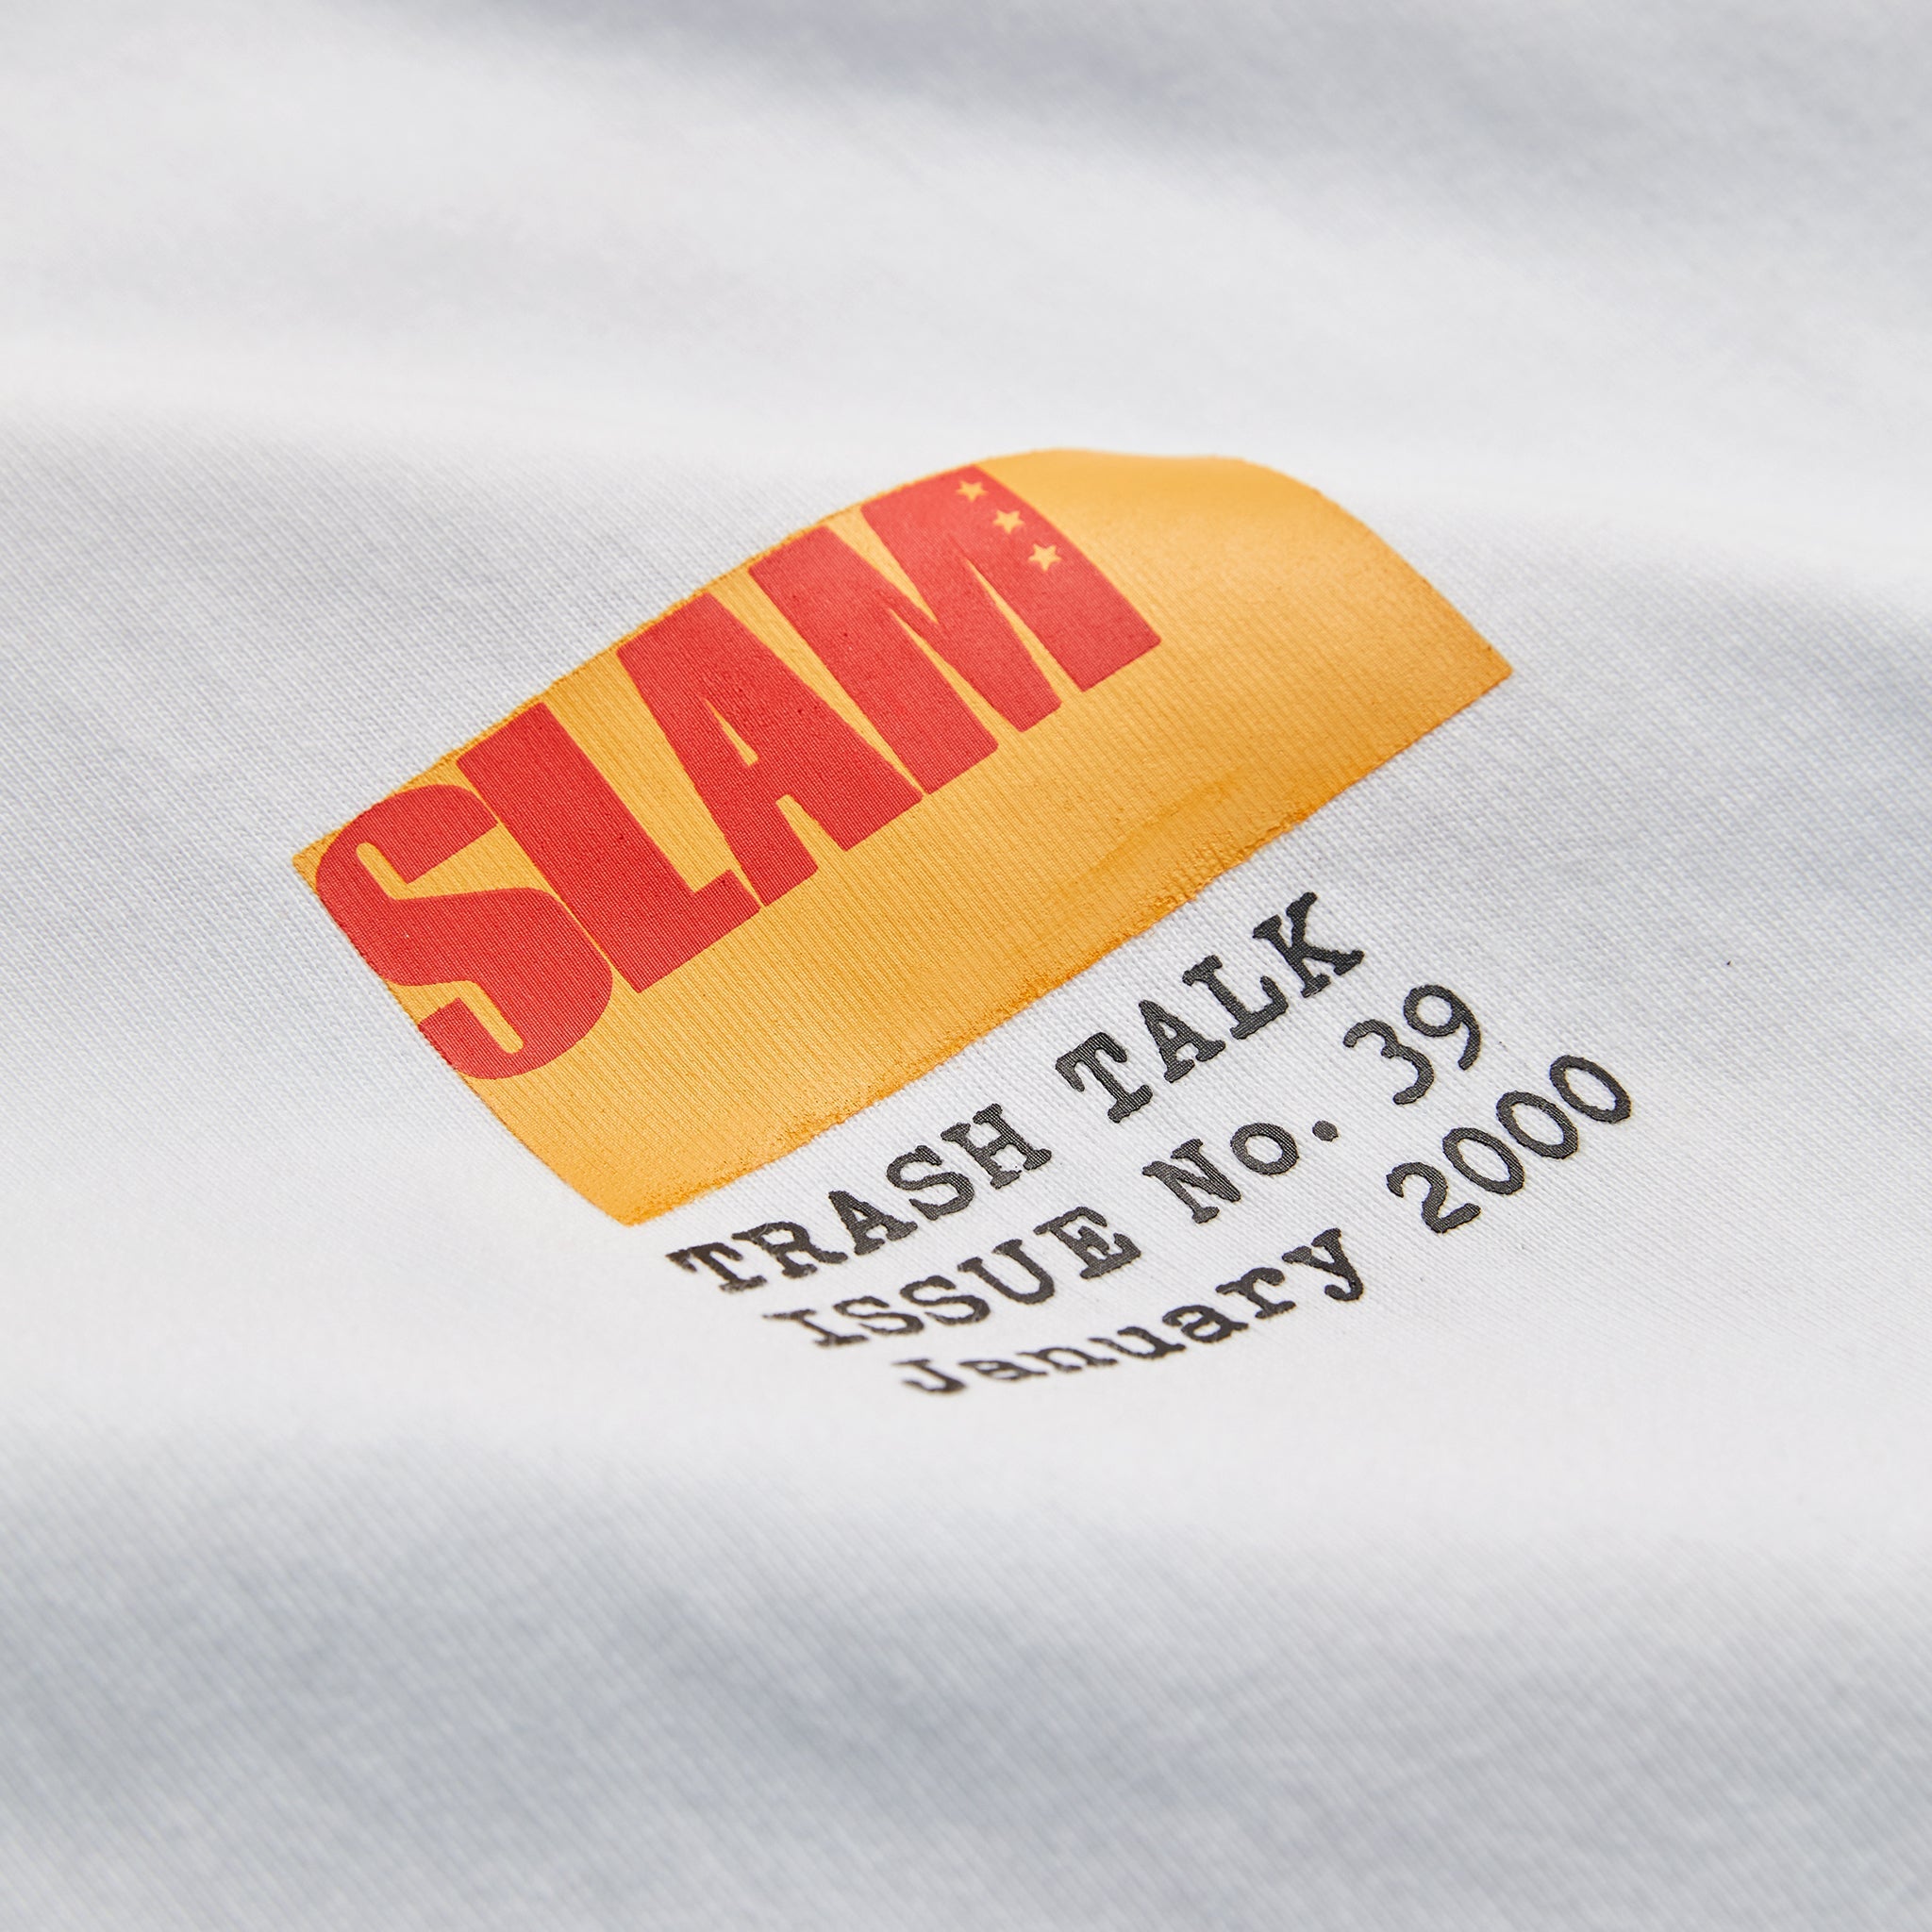 SLAM Trash Talk Issue 39 Tee